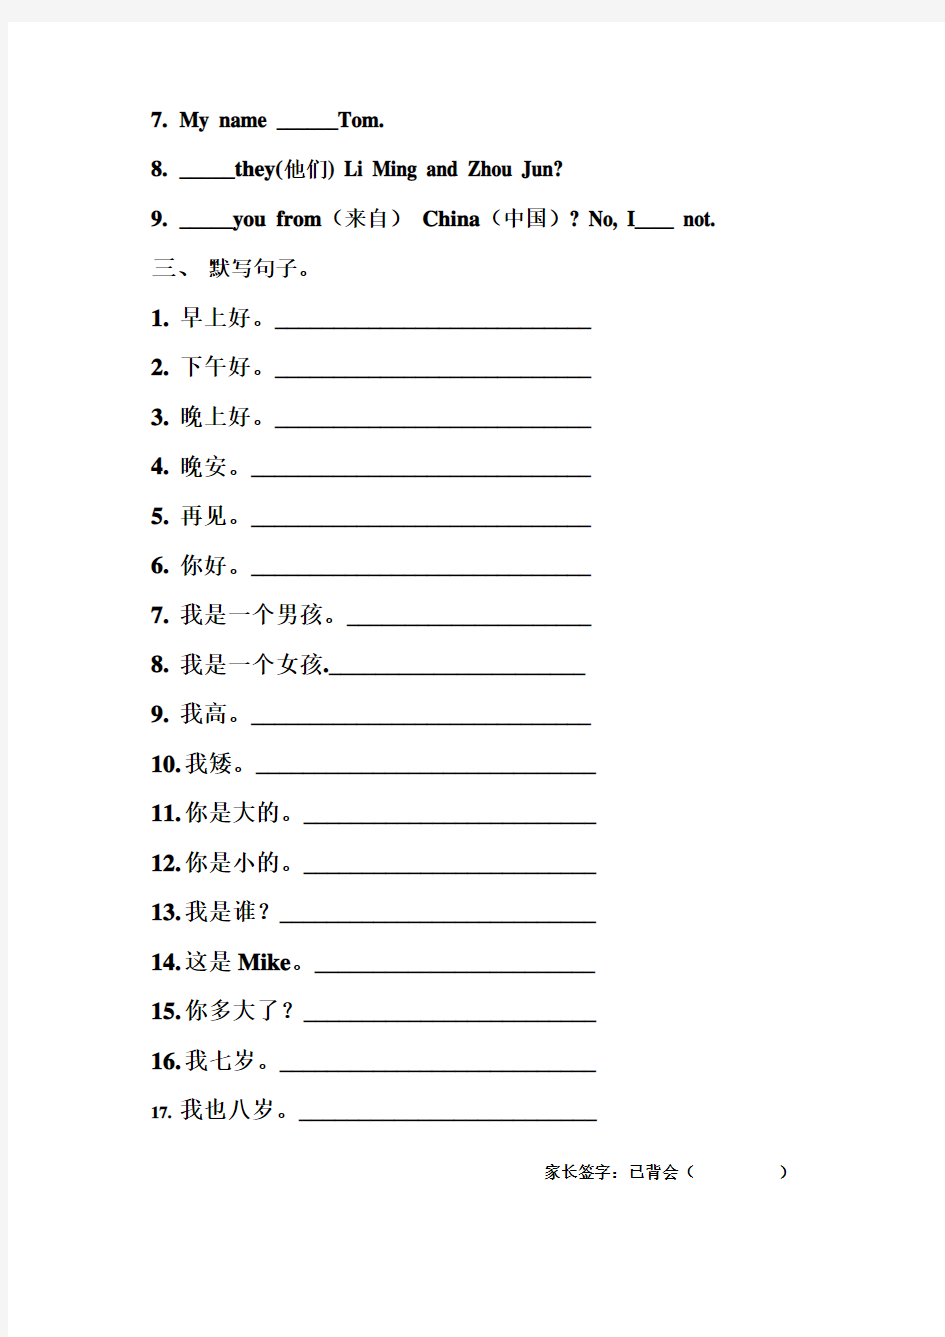 上海版牛津英语二年级上册英语Module1练习题